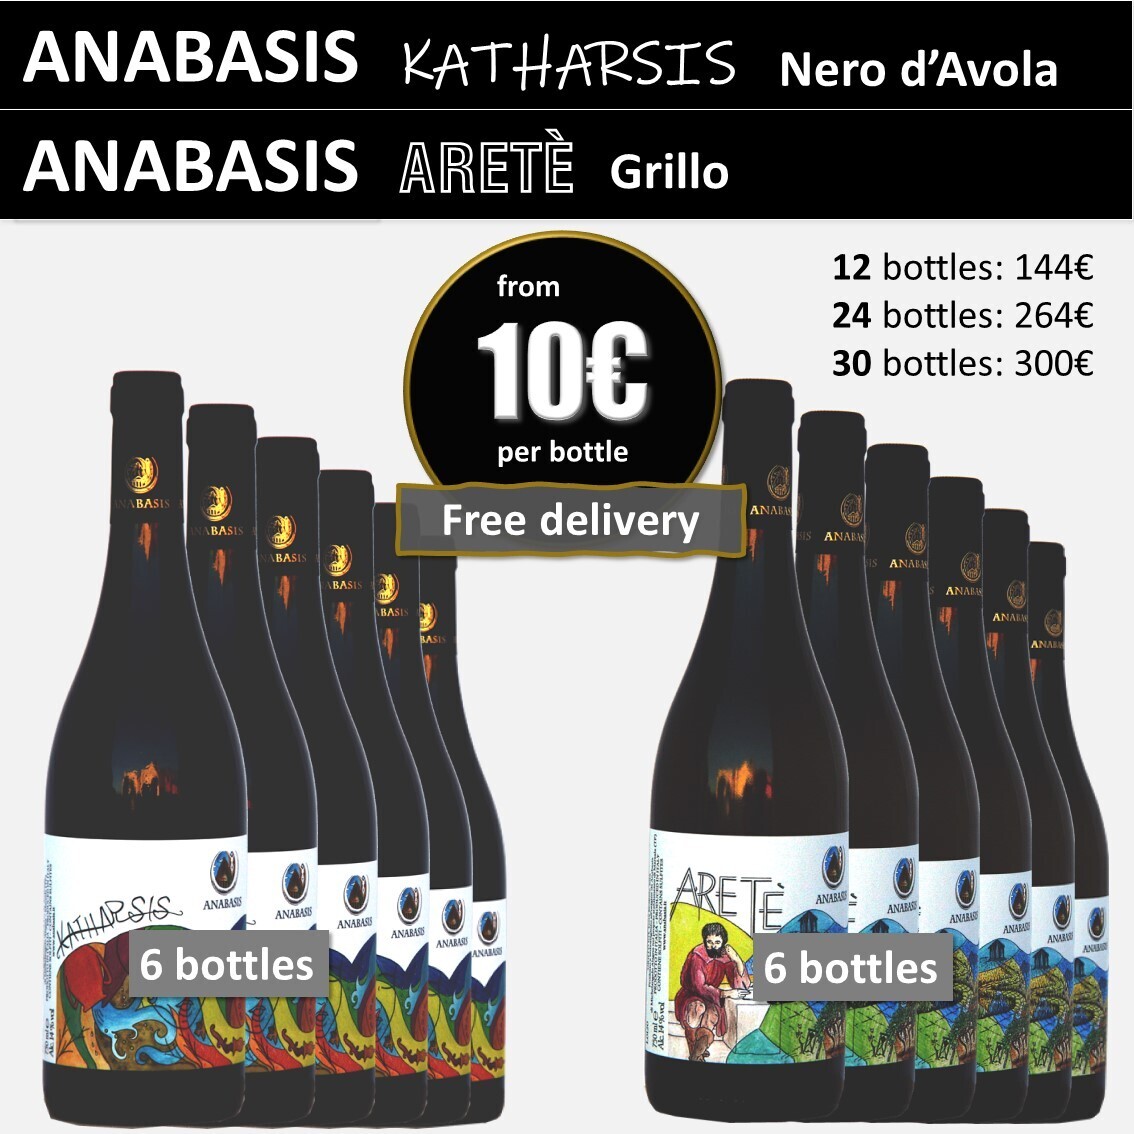 ANABASIS KATHARSIS Nero d'Avola red 6 bottles + ANABASIS ARETÈ Grillo white 6 bottles